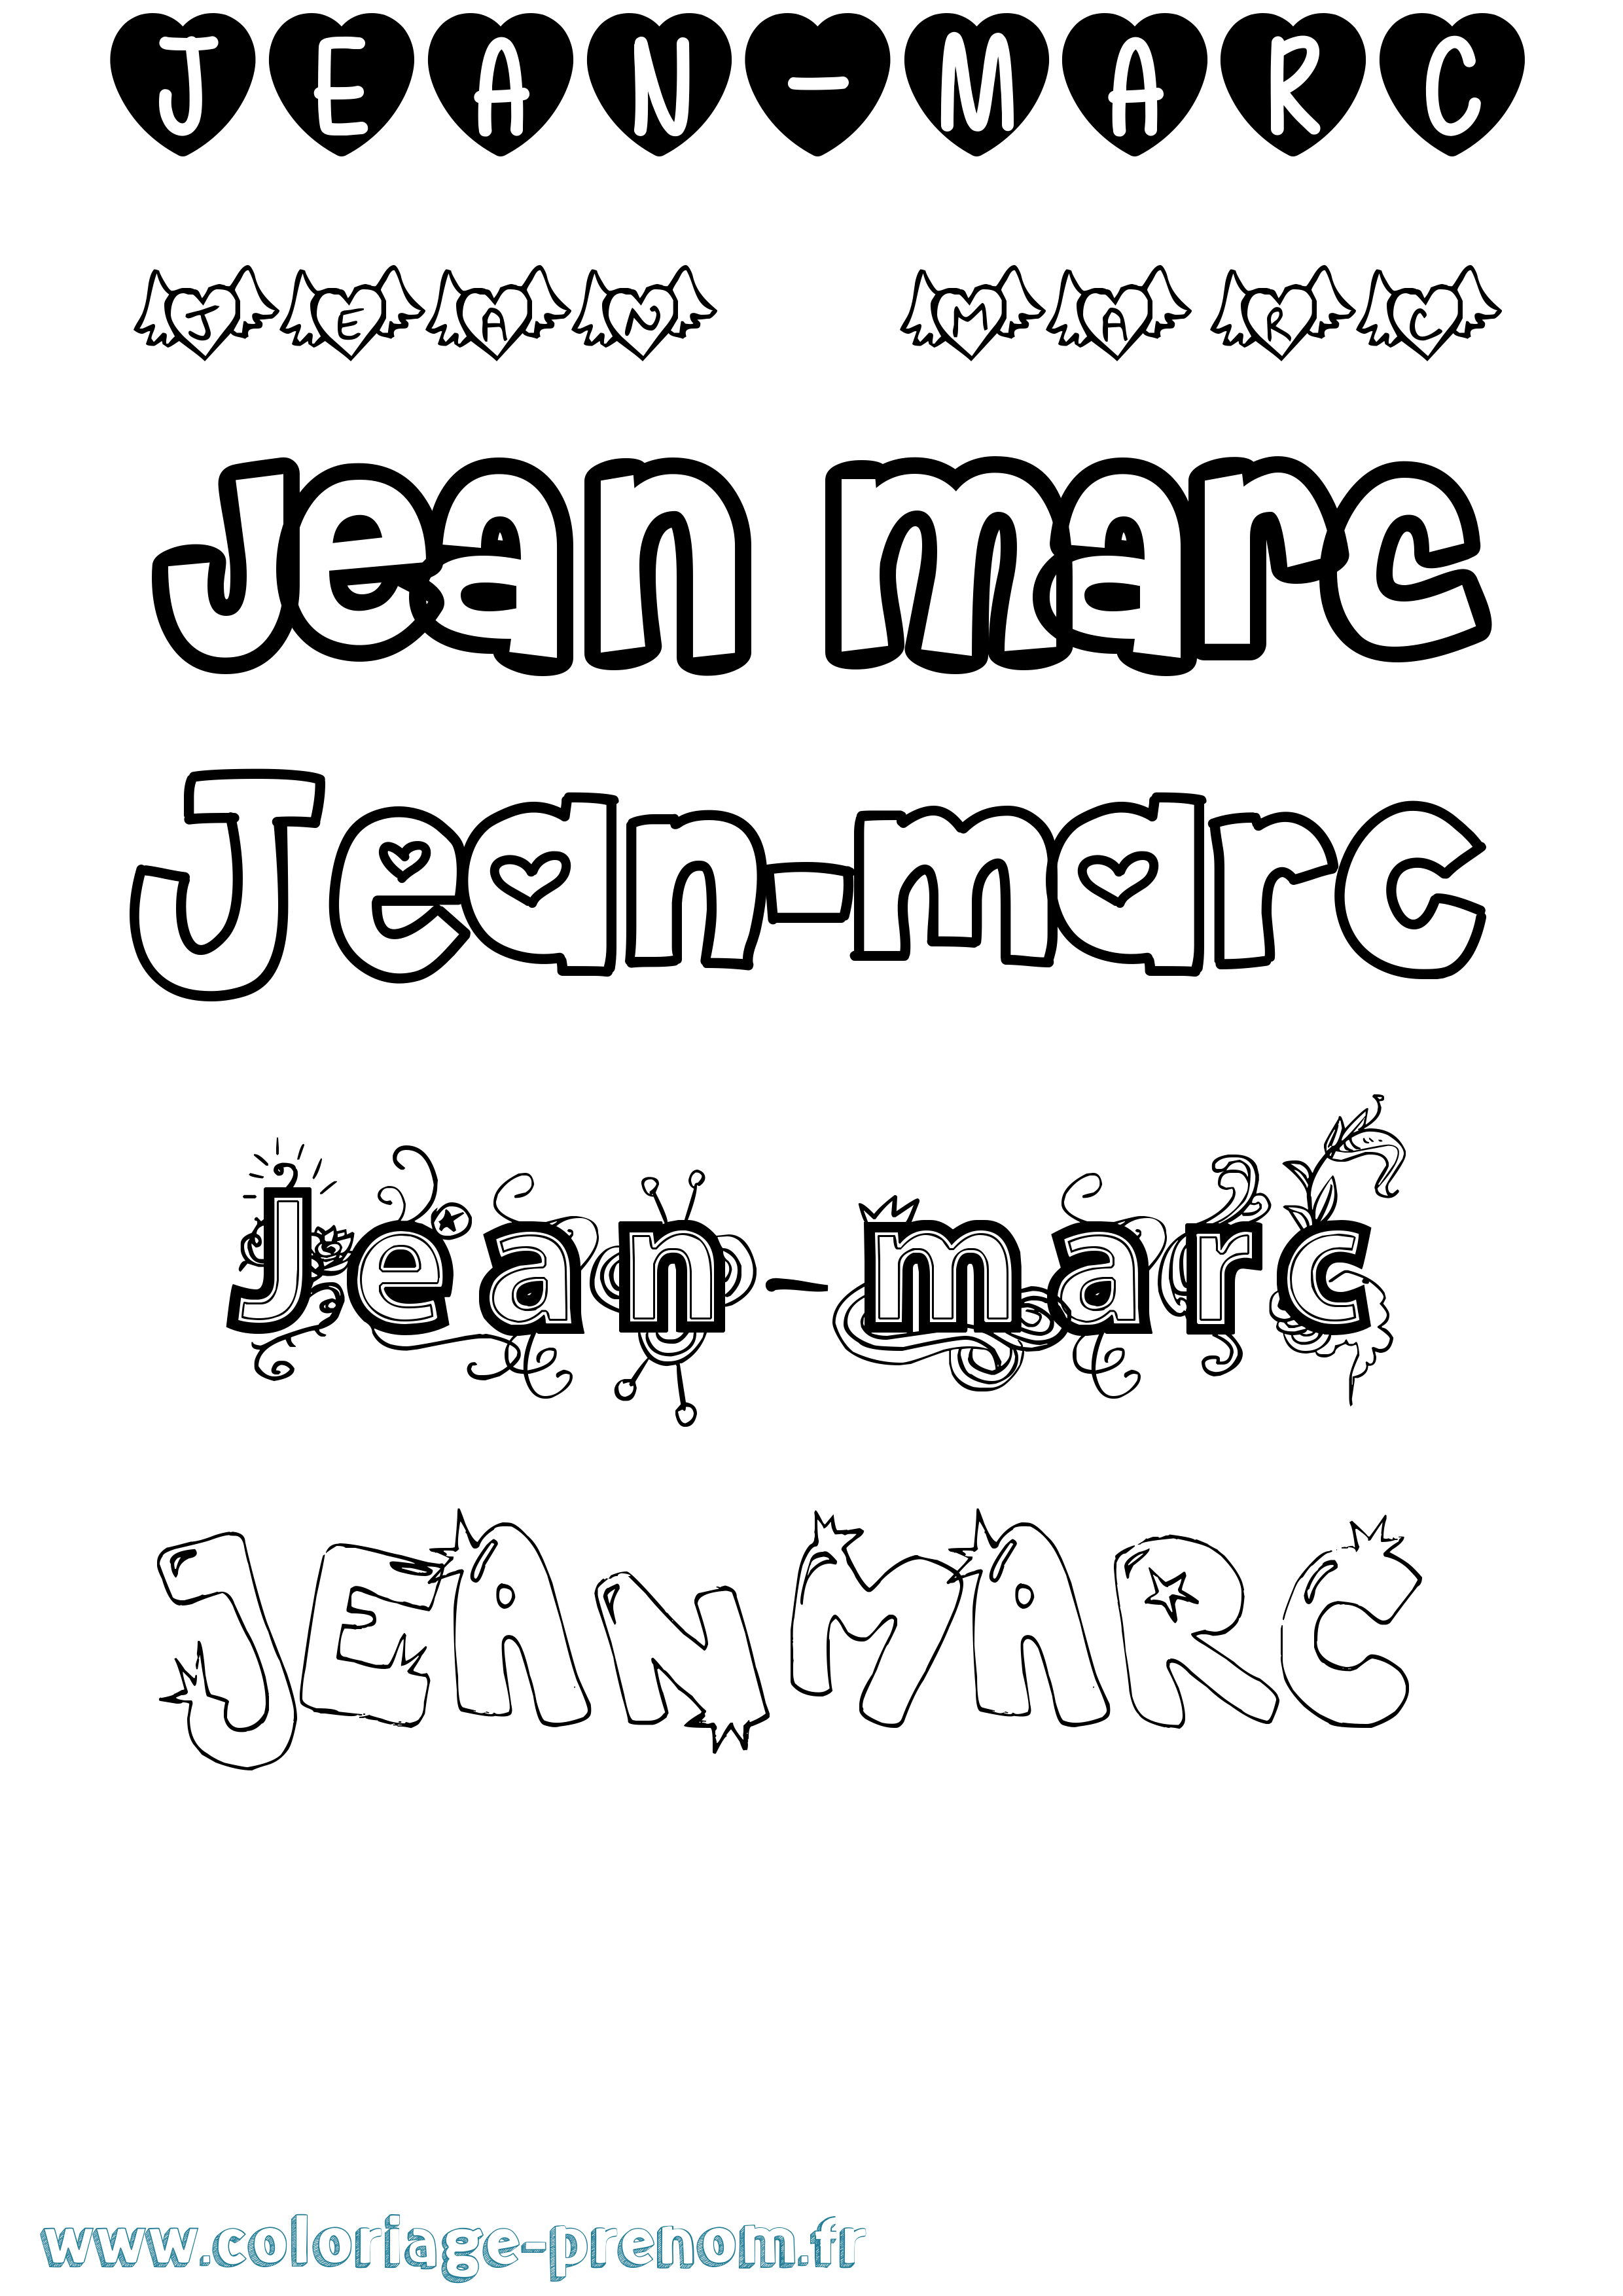 Coloriage prénom Jean-Marc